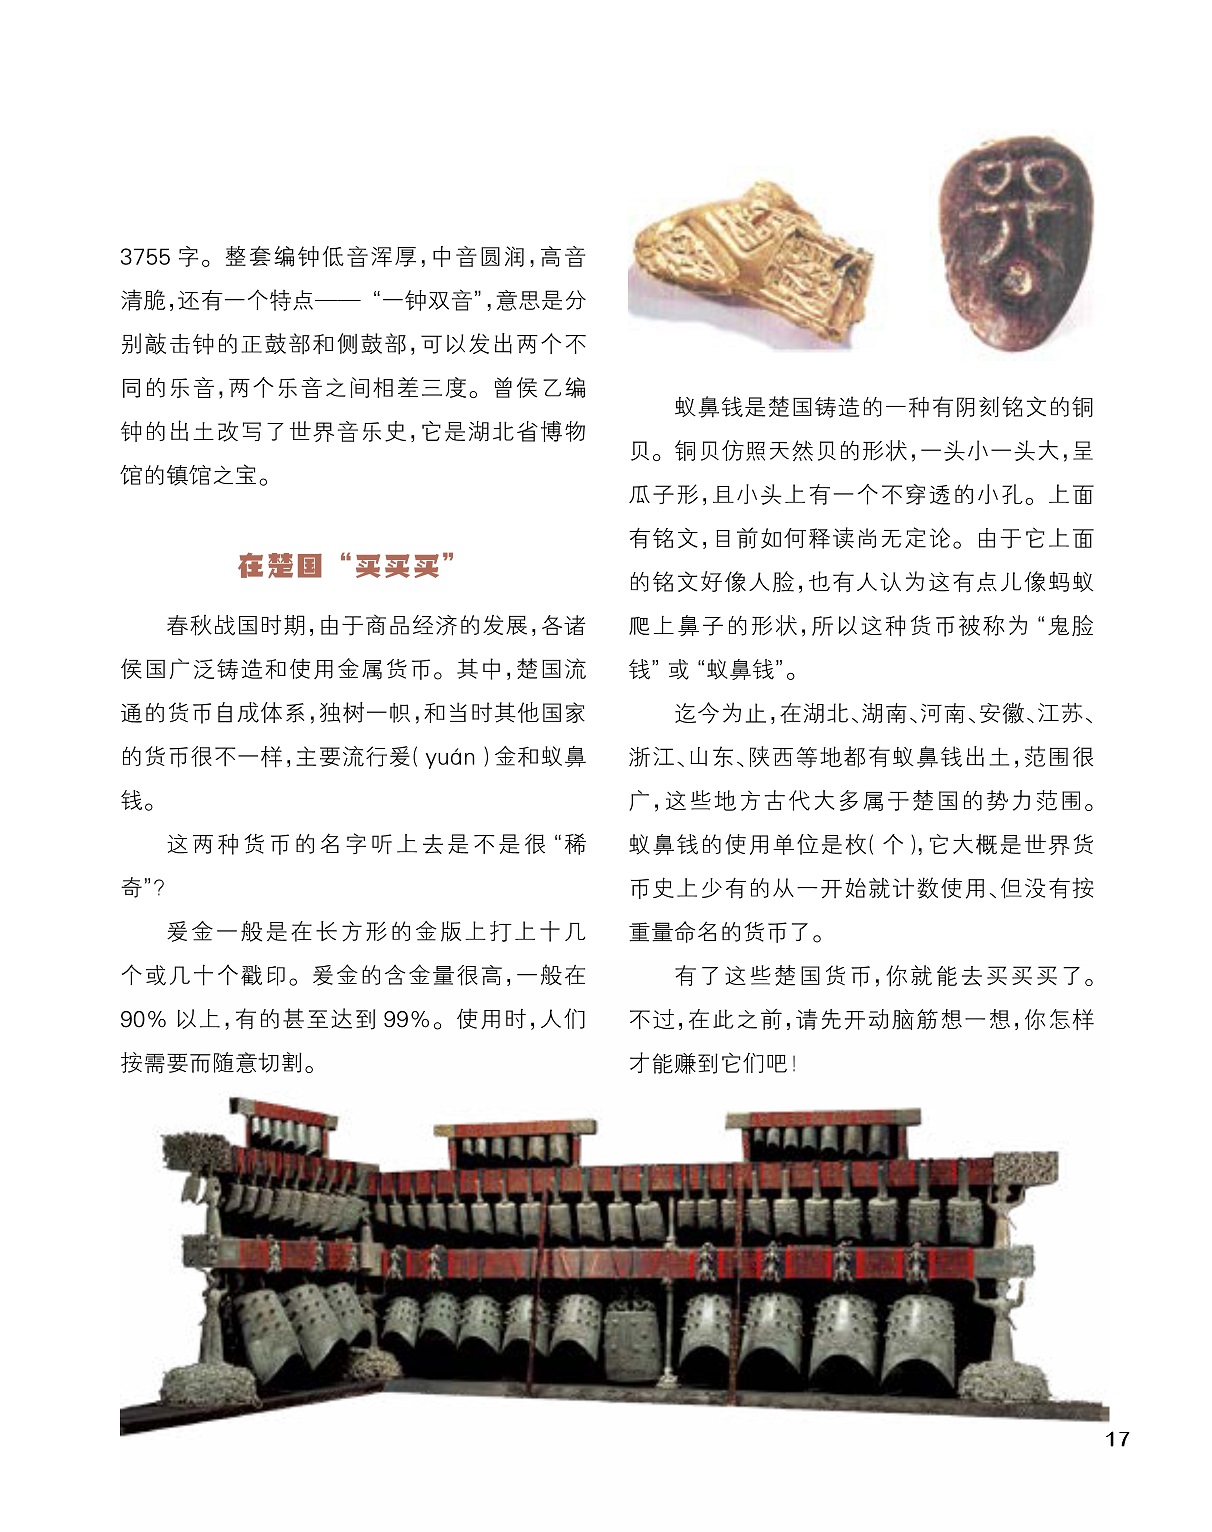 楚国的货币使用,古代商品经济发展